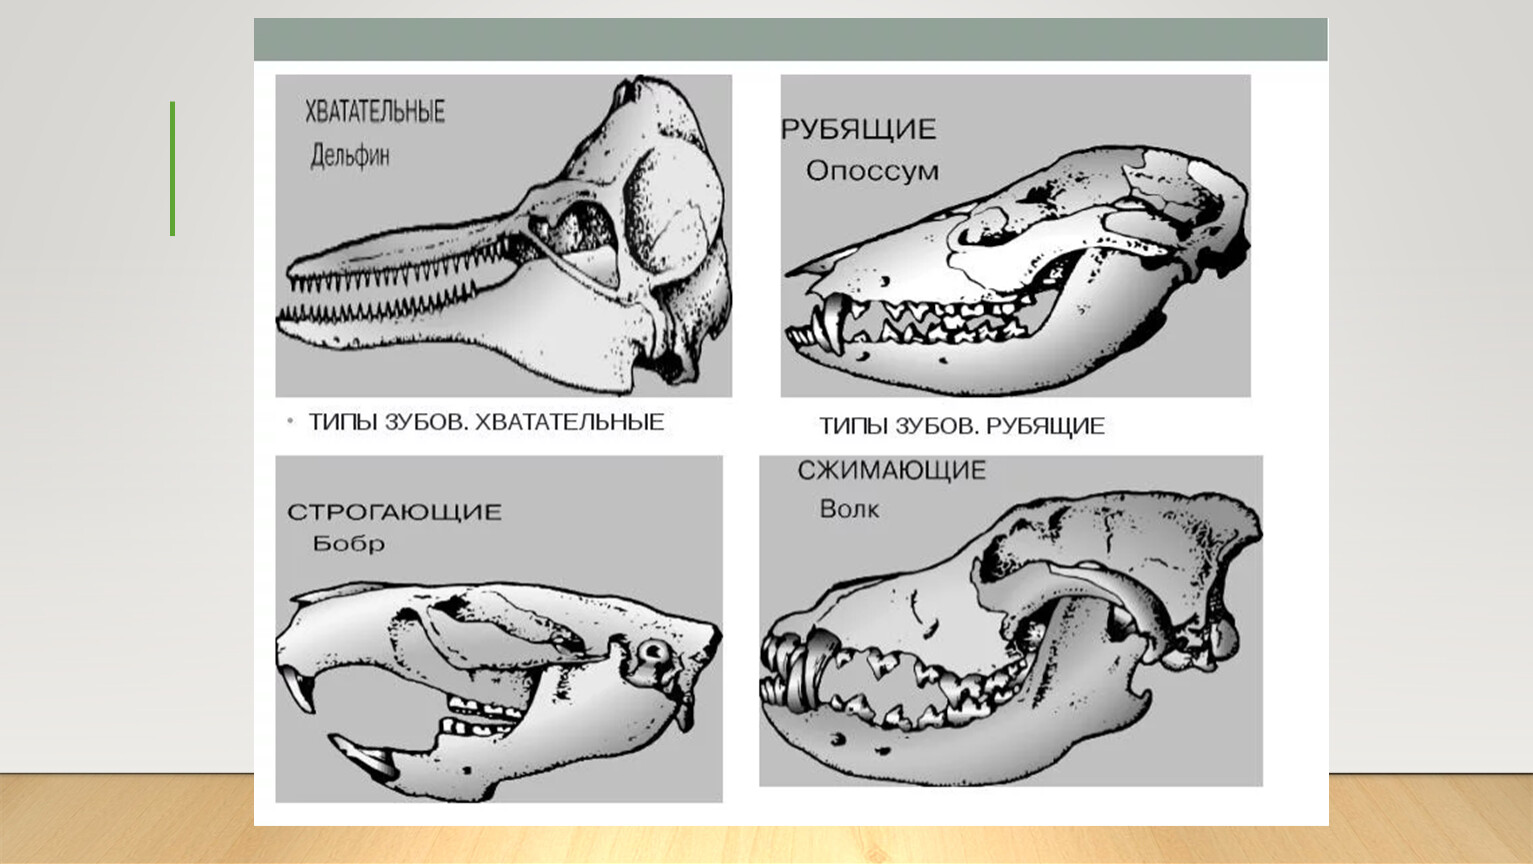 Если у животного имеется череп. Зубная система млекопитающих анатомия. Строение зубов млекопитающих зубная система. Зубные системы животных разных отрядов млекопитающих. Зубная система насекомоядных млекопитающих.